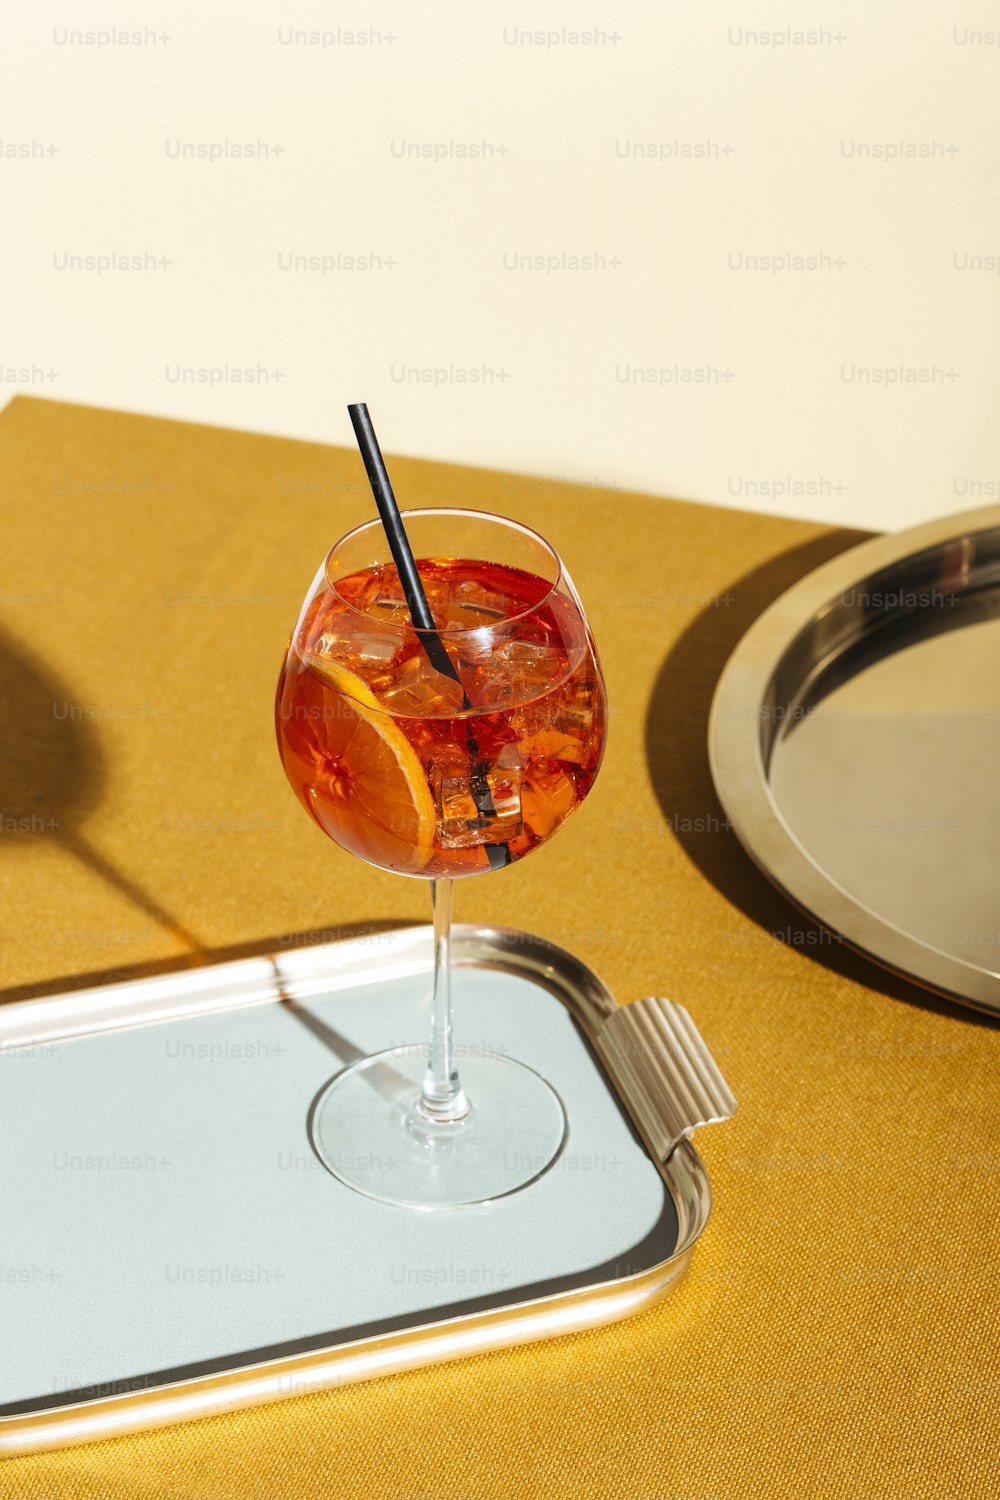 Spritz veneziano, un cocktail da aperitivo con Prosecco o spumante bianco, bitter, soda, ghiaccio e una fetta d'arancia, in un calix su un tavolo, stile grafico pop